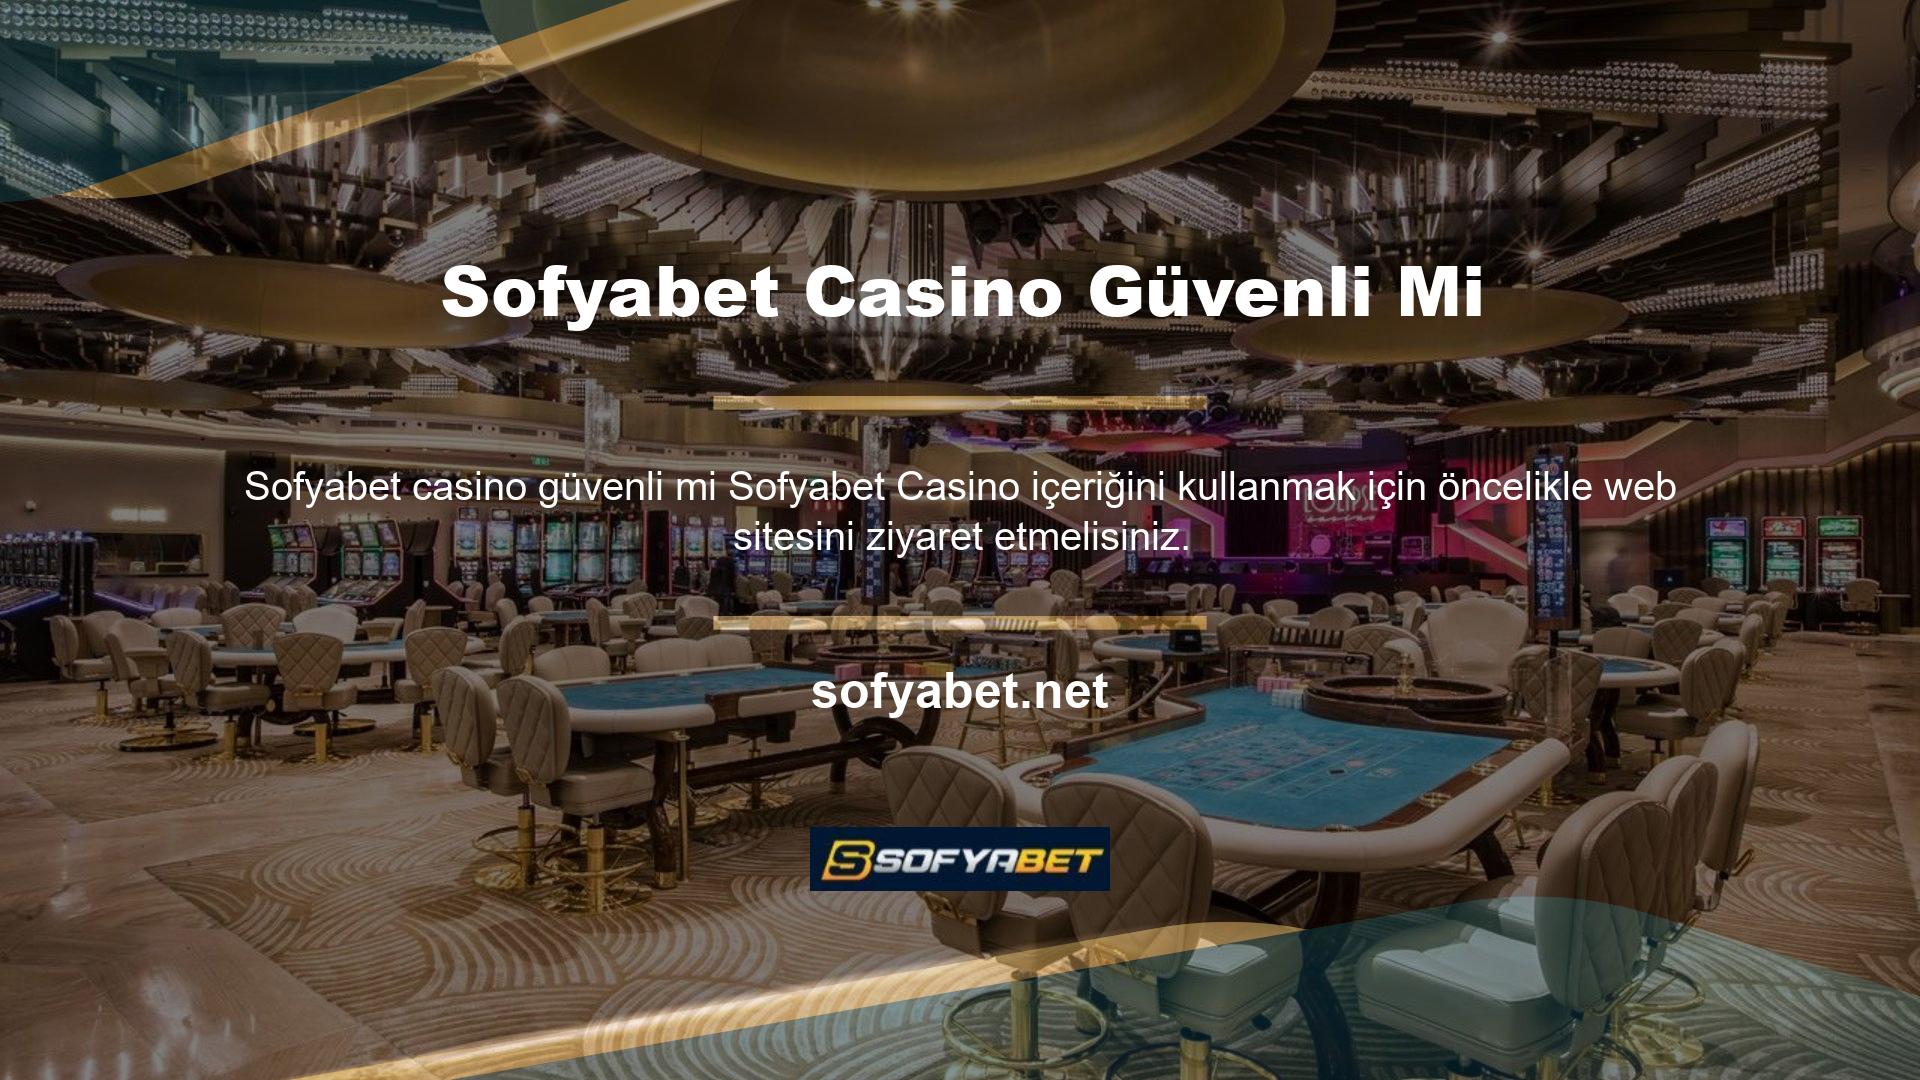 Bu Sofyabet casino siteye üye olduktan sonra güvenli midir, neden canlı desteği seçmelisiniz, siteden kolayca çok para kazanabilirsiniz